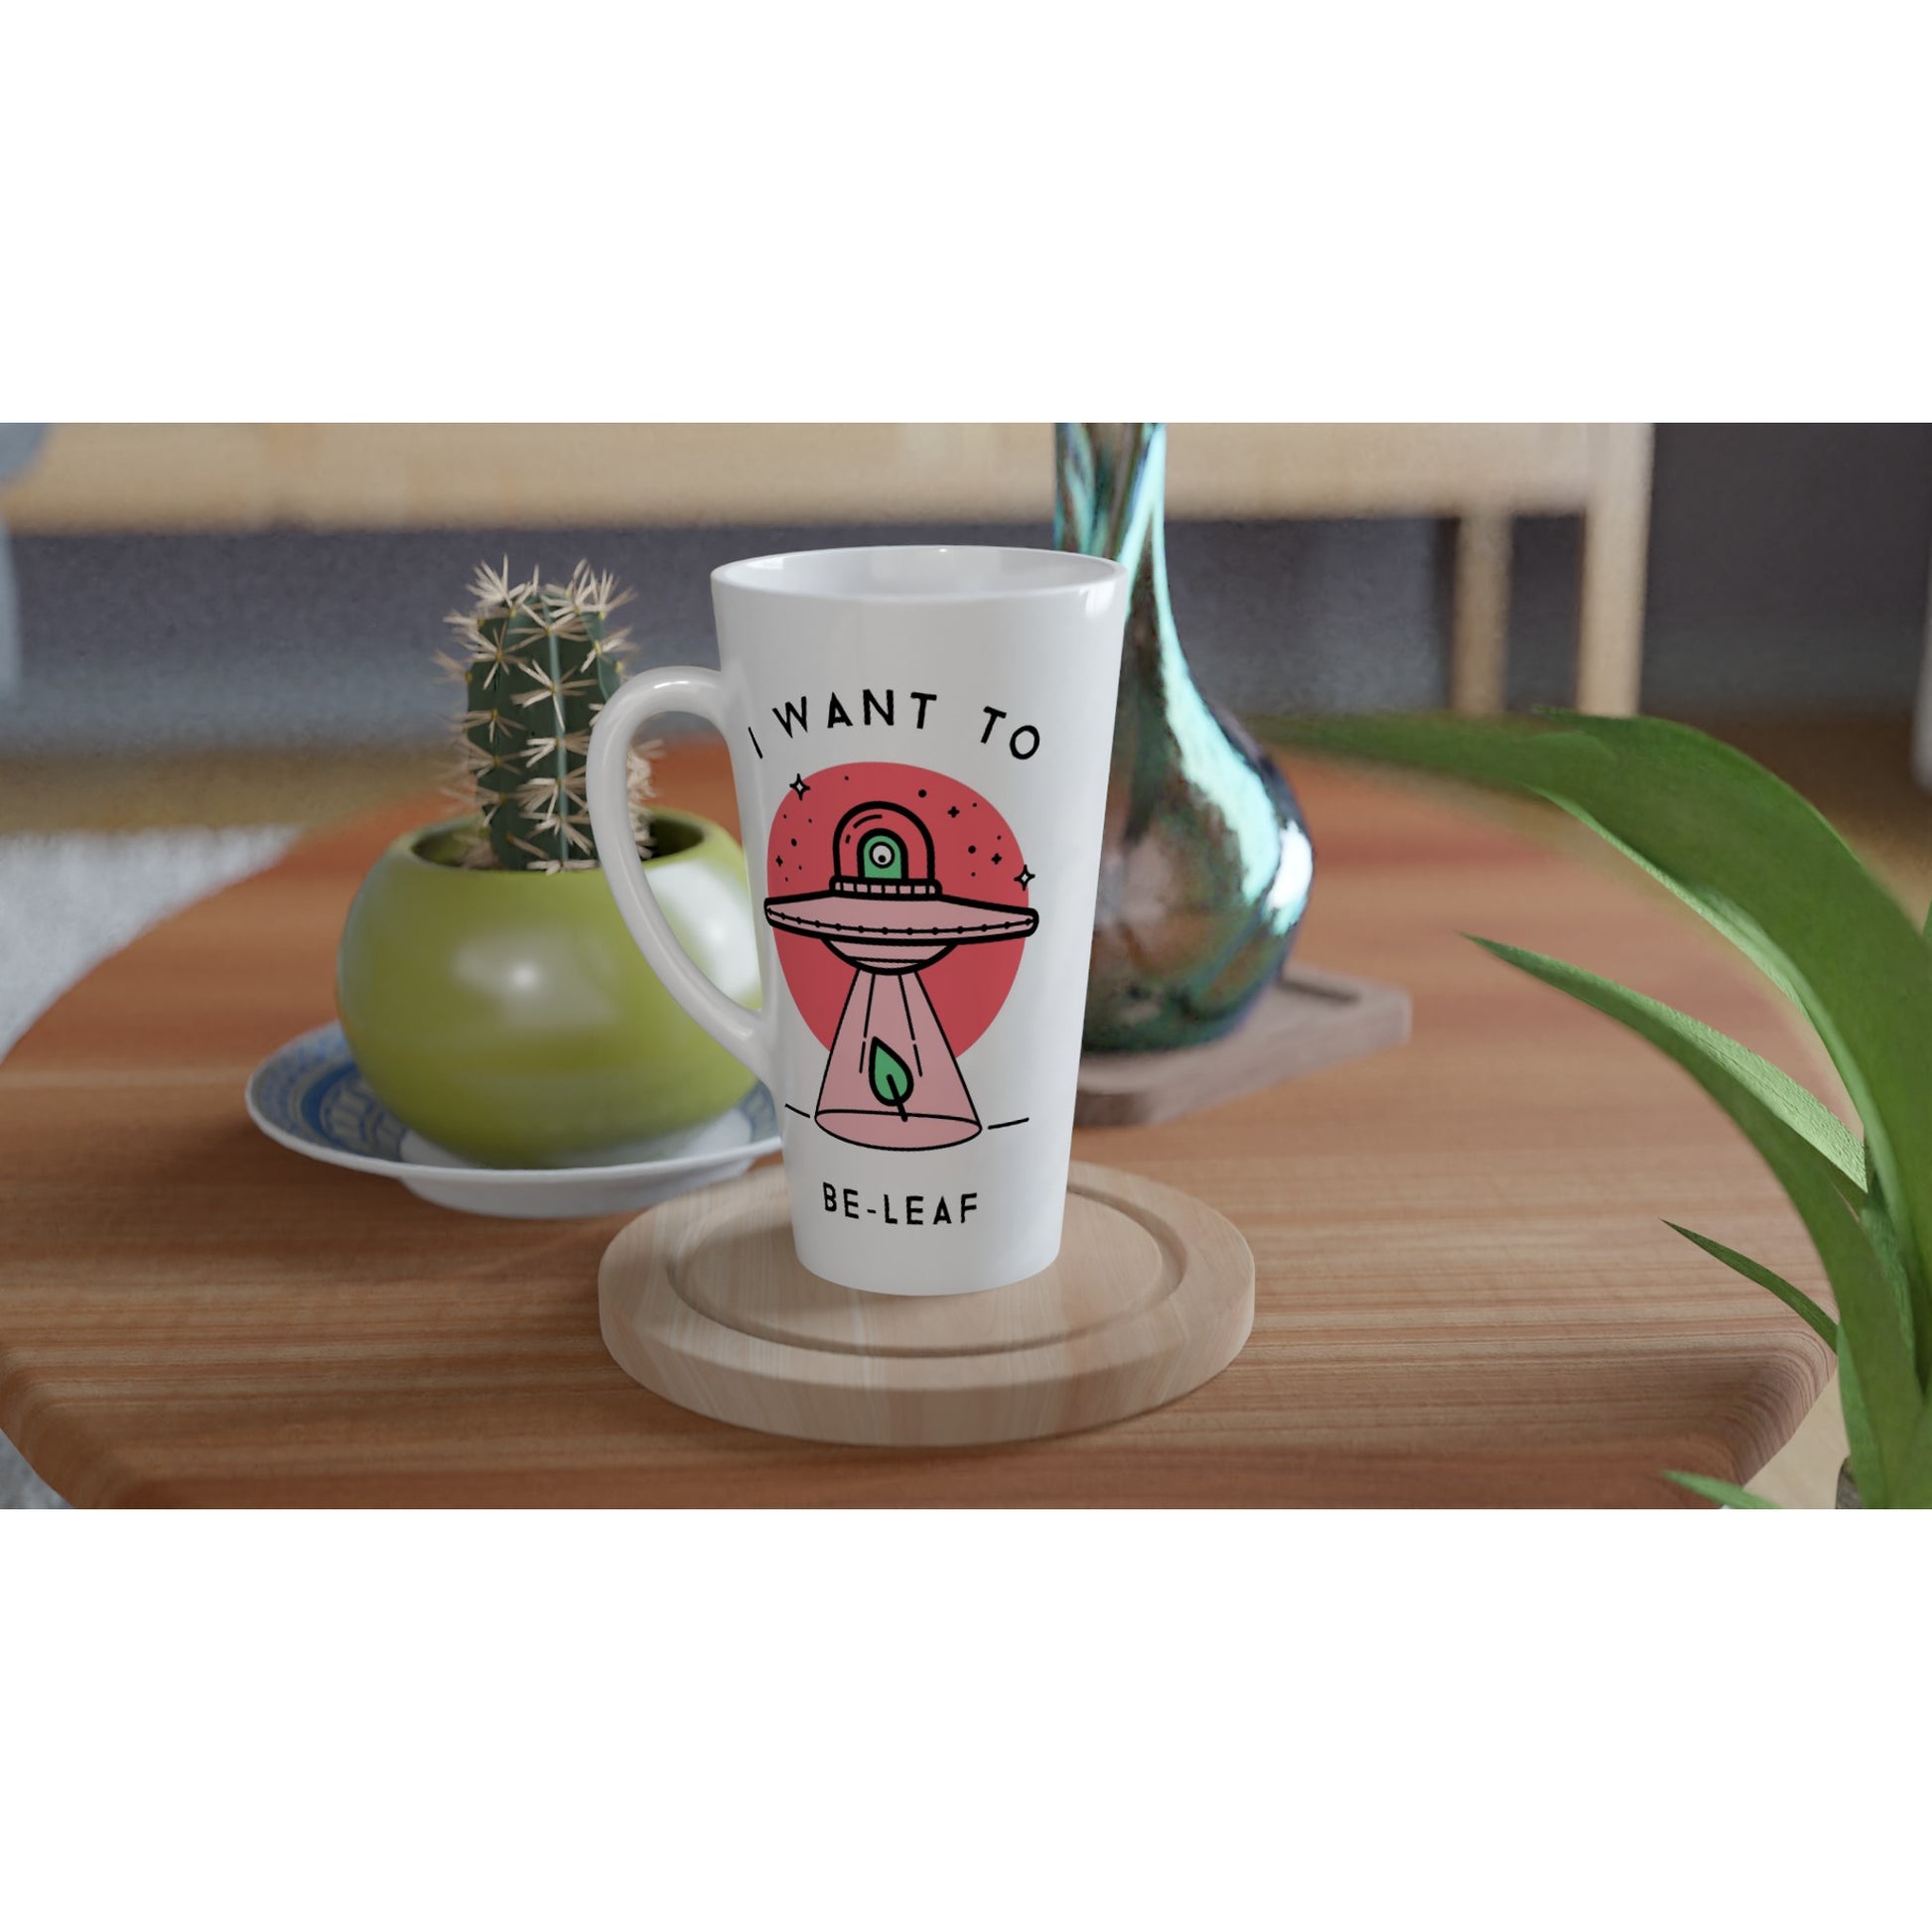 UFO, I Want To Be-Leaf - White Latte 17oz Ceramic Mug Latte Mug Sci Fi